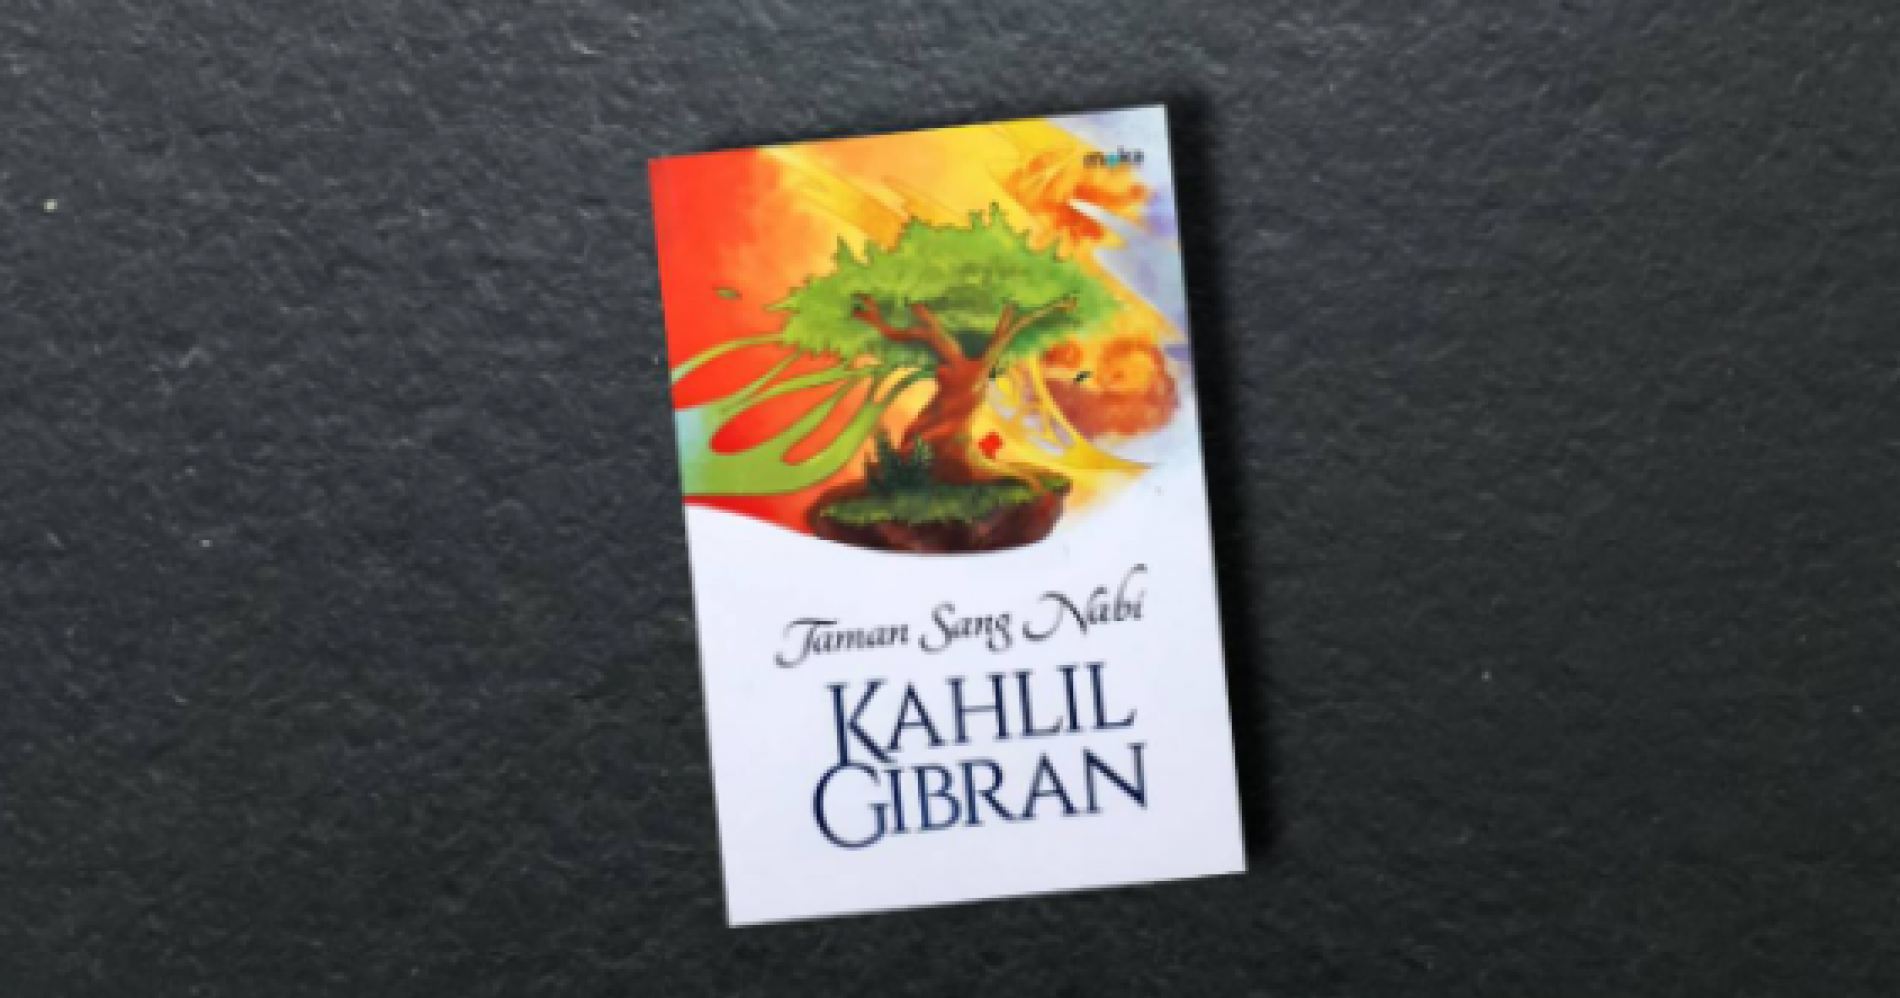 Buku Taman Sang Nabi karya Kahlil Gibran (Sumber gambar: Muhamad Ali)